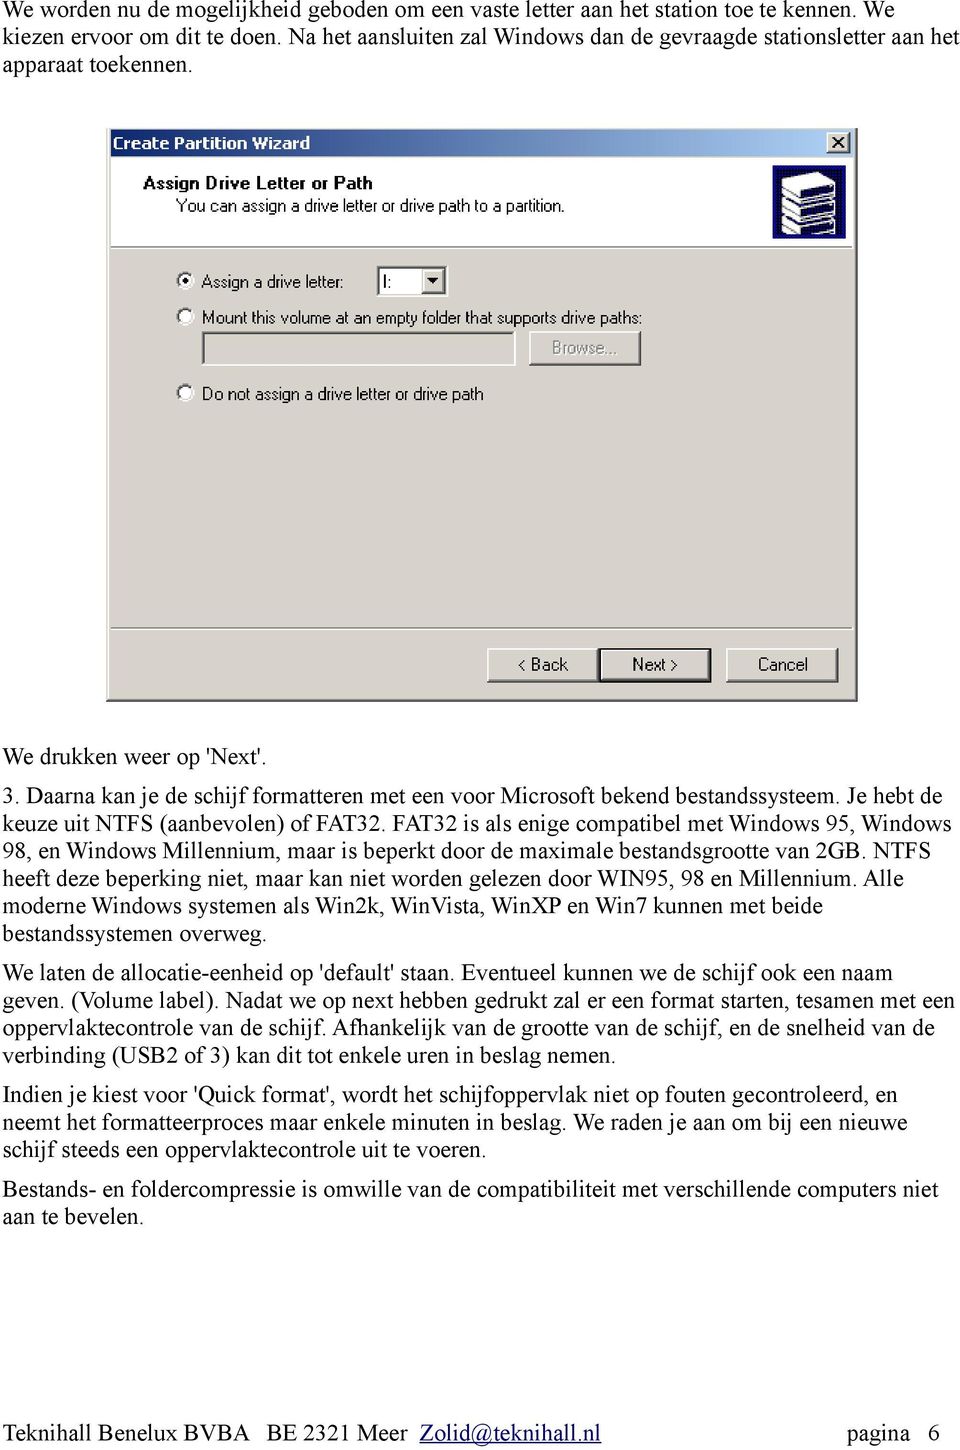 Daarna kan je de schijf formatteren met een voor Microsoft bekend bestandssysteem. Je hebt de keuze uit NTFS (aanbevolen) of FAT32.